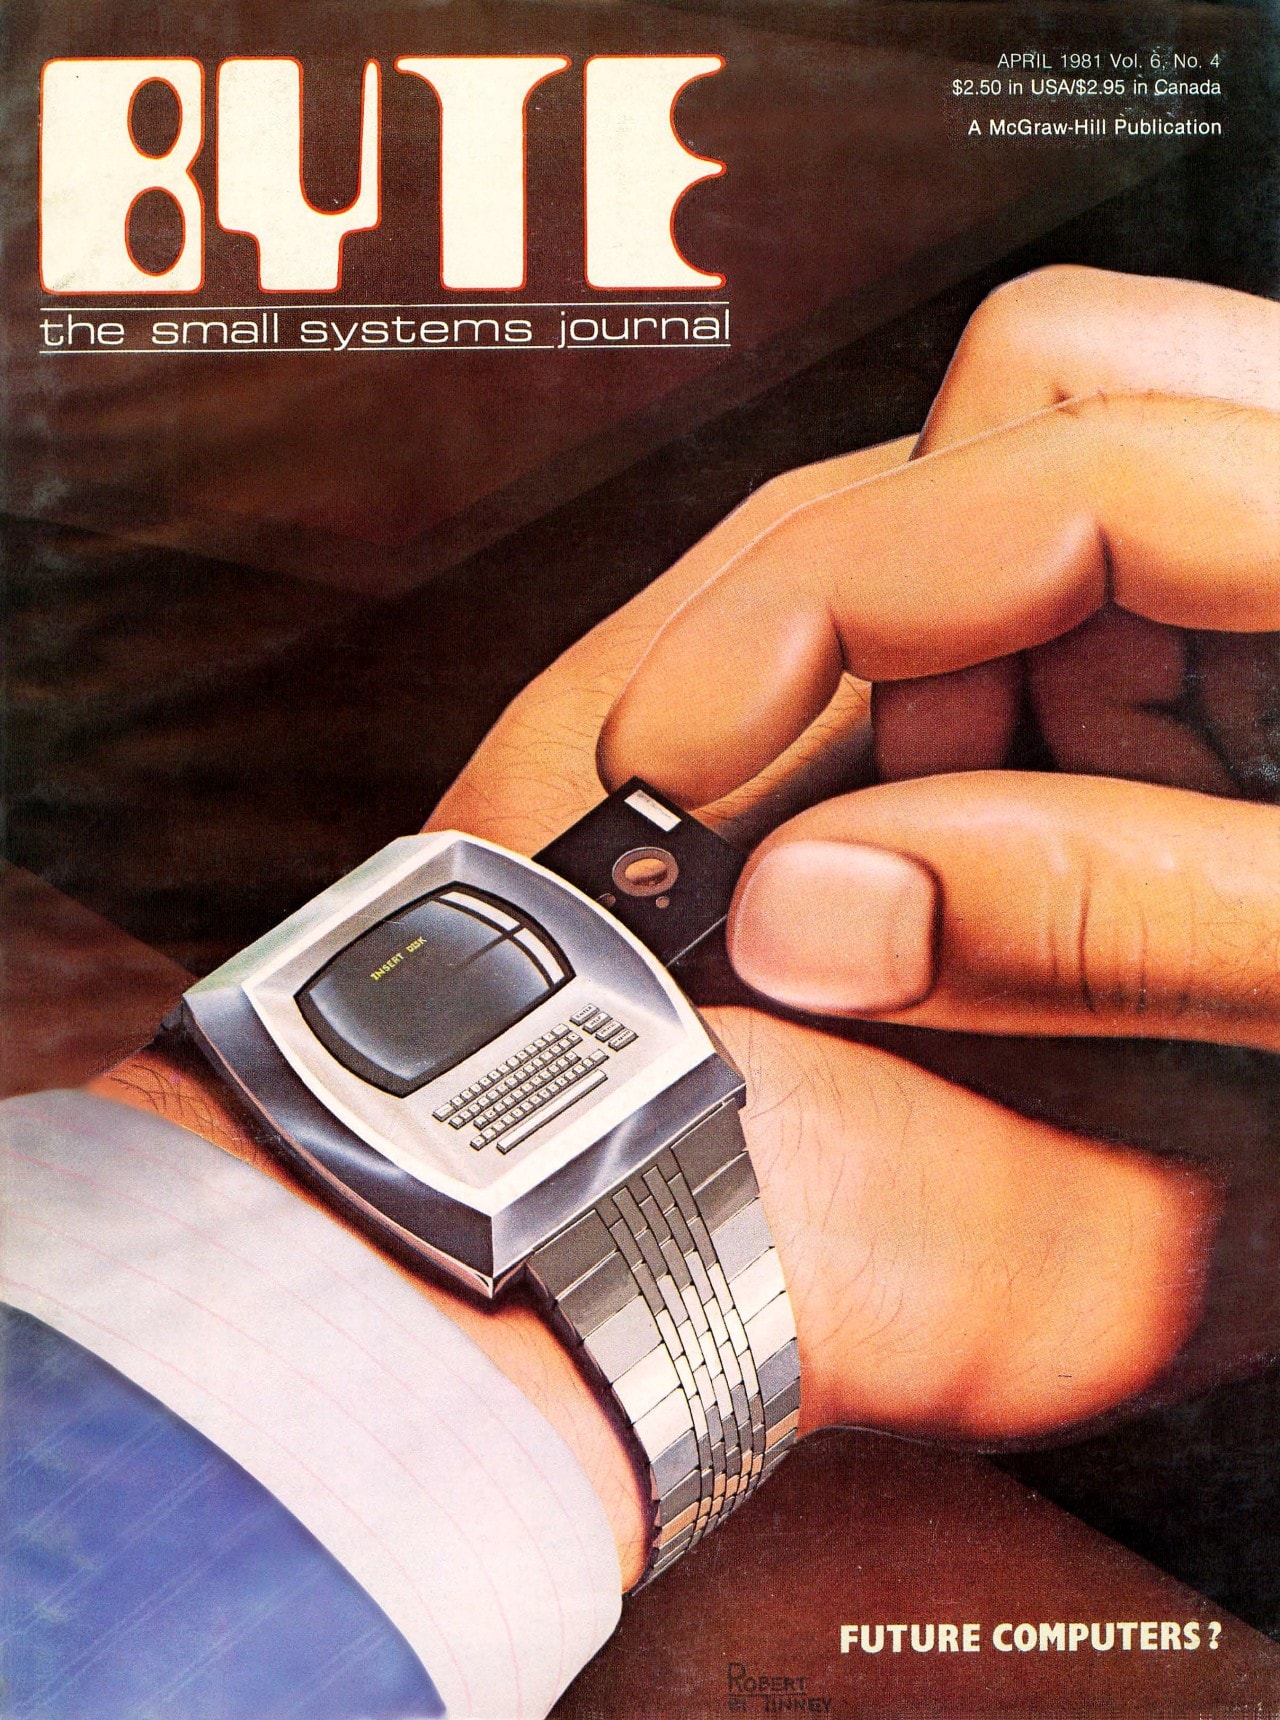 Capa da revista Byte, mostrando um relógio que imita um computador no pulso de uma pessoa, e ela inserindo um minúsculo disquete no relógio. No canto inferior, a pergunta 'Future computers?'